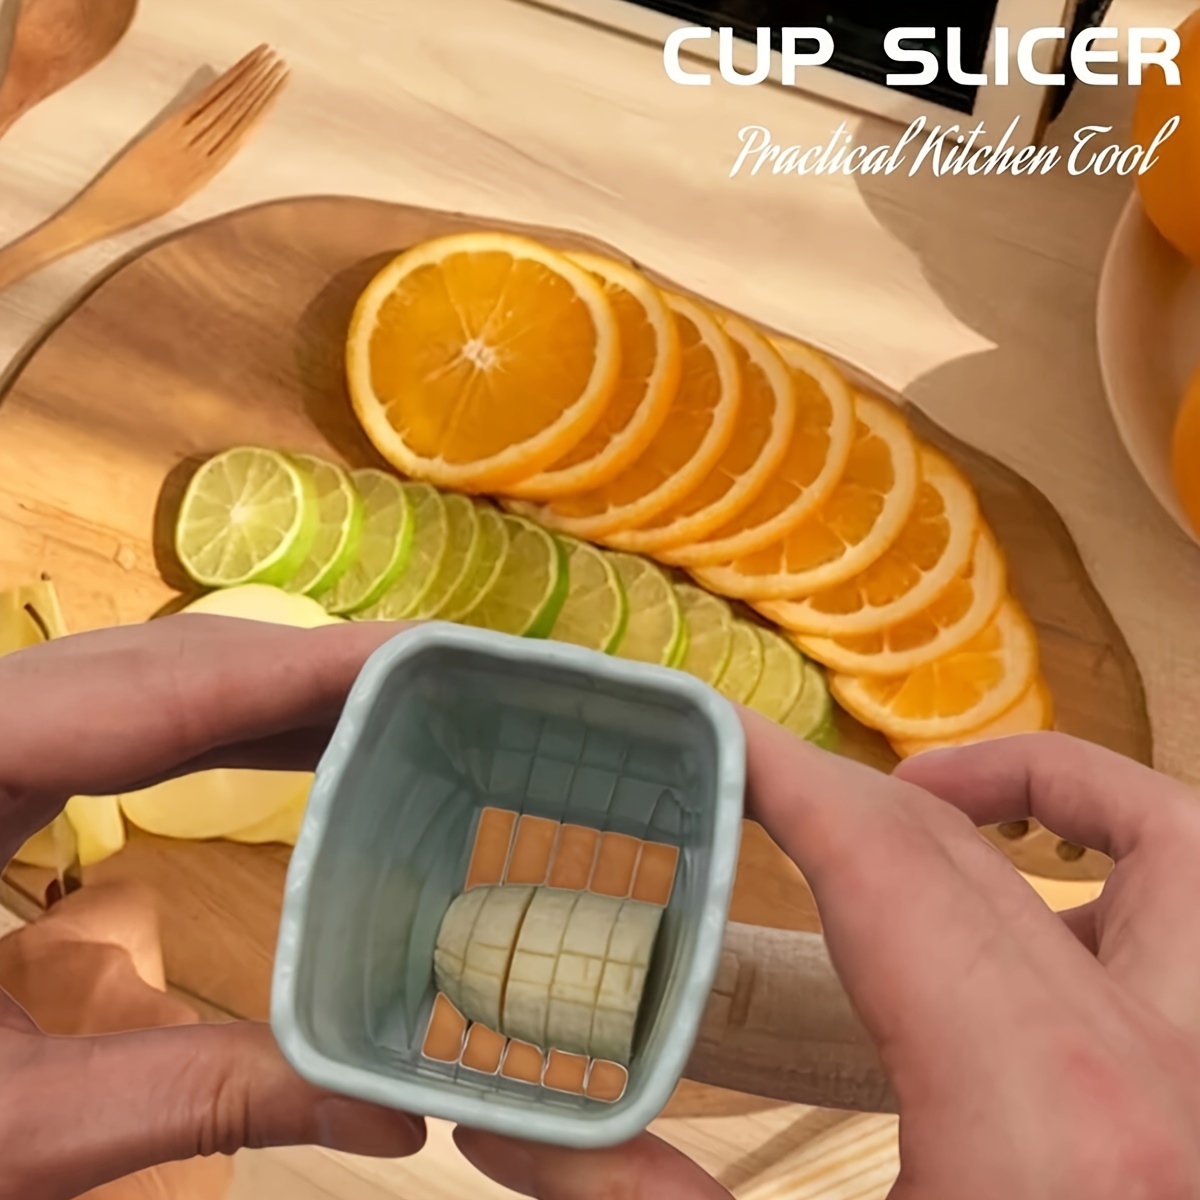 Strawberry Fruit Slicer Kitchen Gadget 